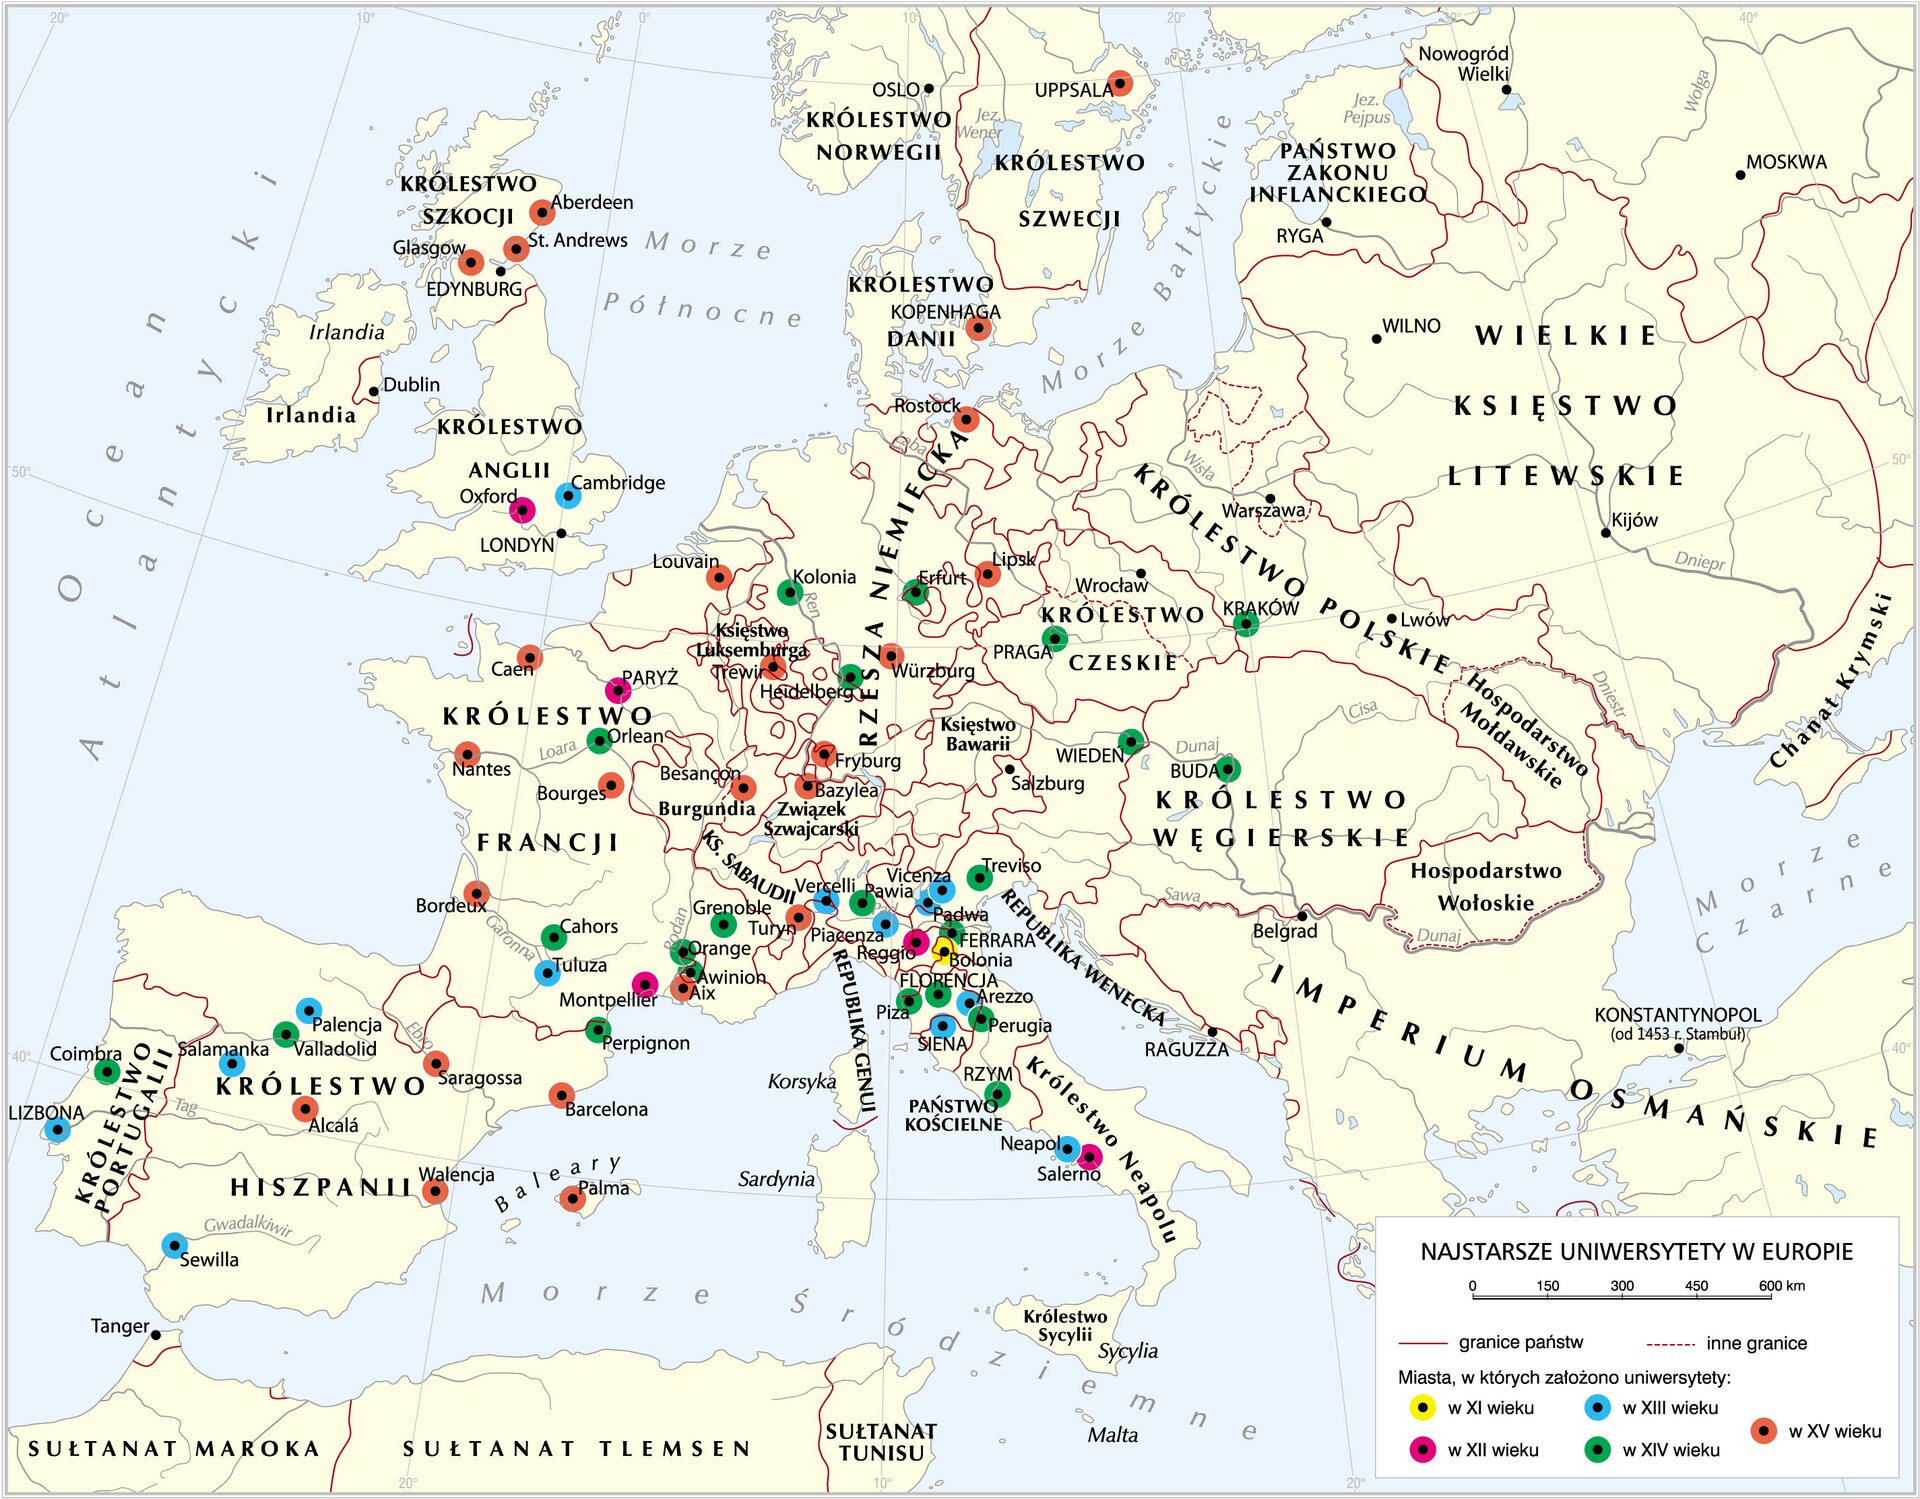 Uniwersytety w Europie do końca XV wieku Uniwersytety w Europie do końca XV wieku Źródło: Krystian Chariza i zespół, mapa.